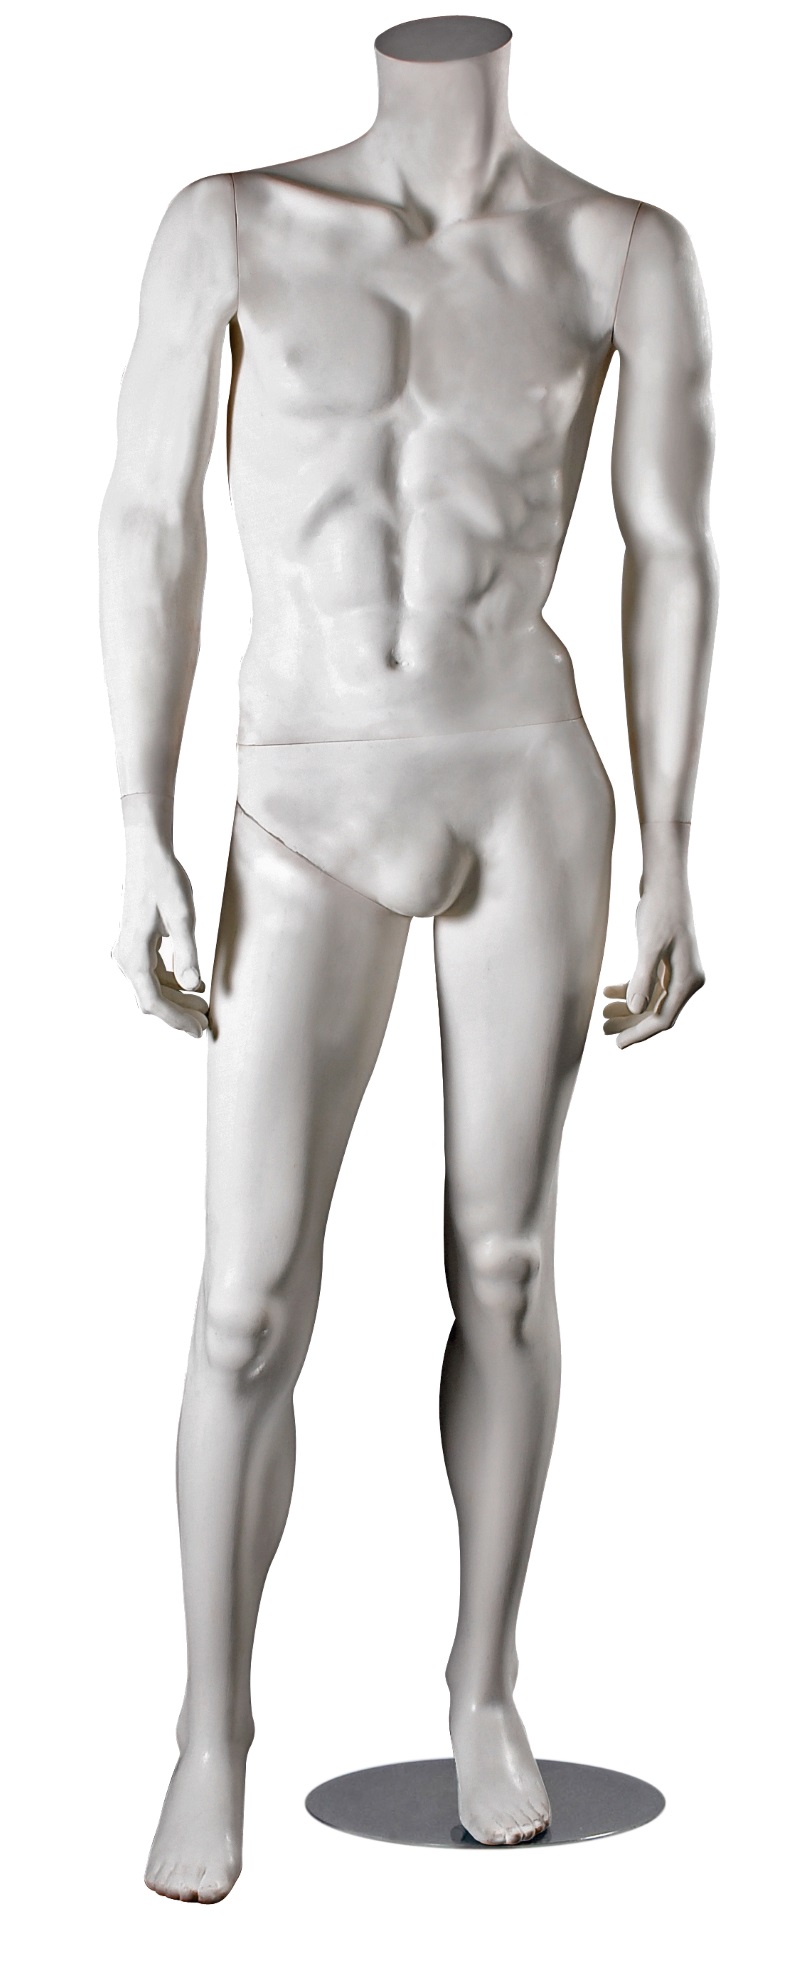 Schaufensterfigur "Style" Herr ohne Kopf, mit ausgestelltem Bein